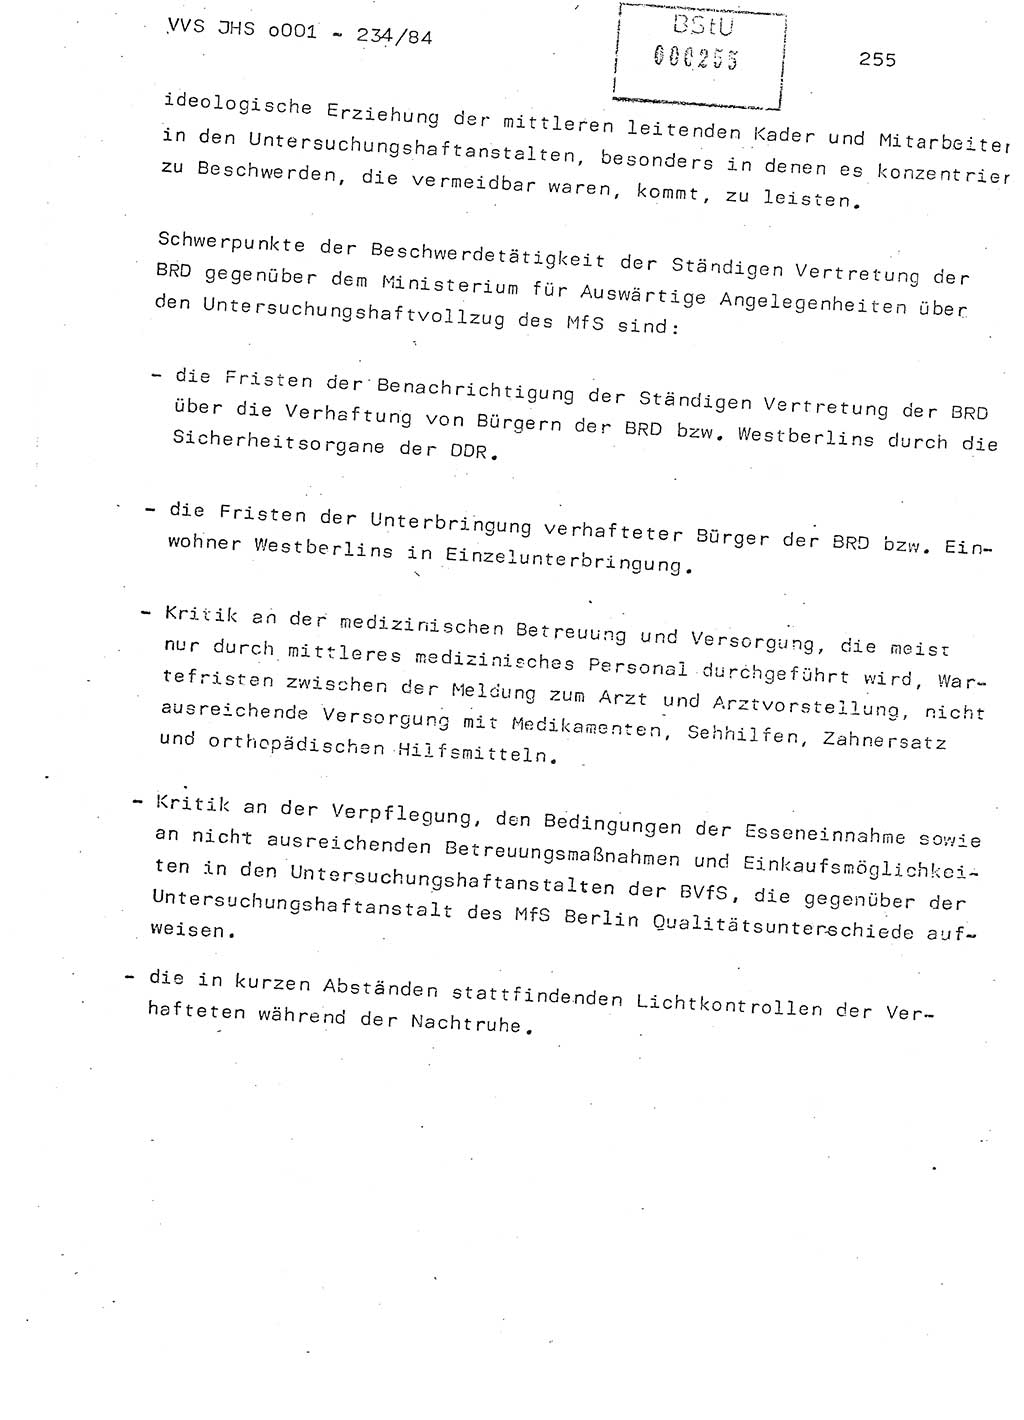 Dissertation Oberst Siegfried Rataizick (Abt. ⅩⅣ), Oberstleutnant Volkmar Heinz (Abt. ⅩⅣ), Oberstleutnant Werner Stein (HA Ⅸ), Hauptmann Heinz Conrad (JHS), Ministerium für Staatssicherheit (MfS) [Deutsche Demokratische Republik (DDR)], Juristische Hochschule (JHS), Vertrauliche Verschlußsache (VVS) o001-234/84, Potsdam 1984, Seite 255 (Diss. MfS DDR JHS VVS o001-234/84 1984, S. 255)